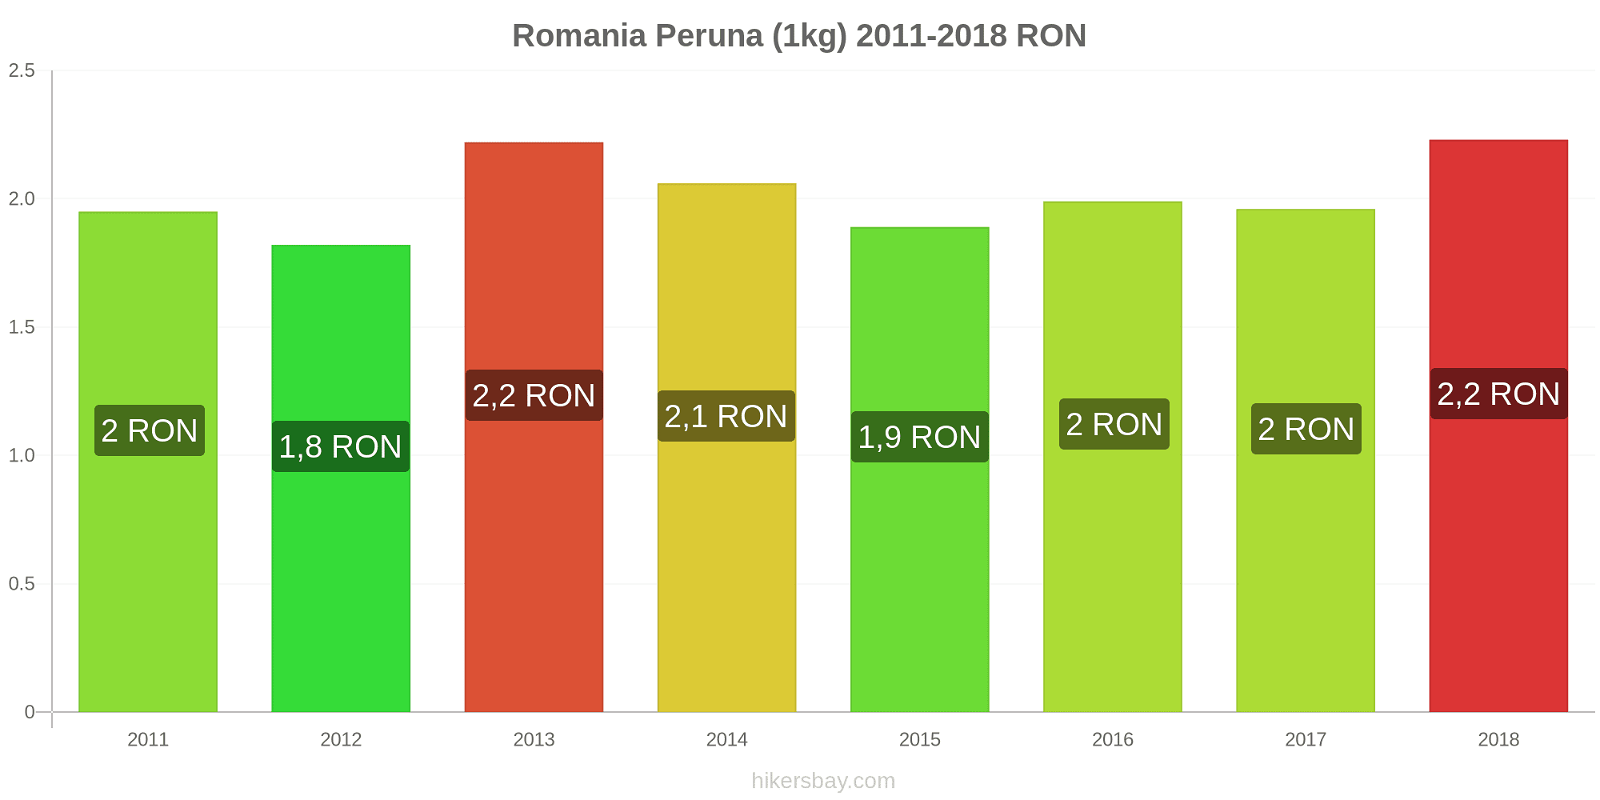 Romania hintojen muutokset Peruna (1kg) hikersbay.com